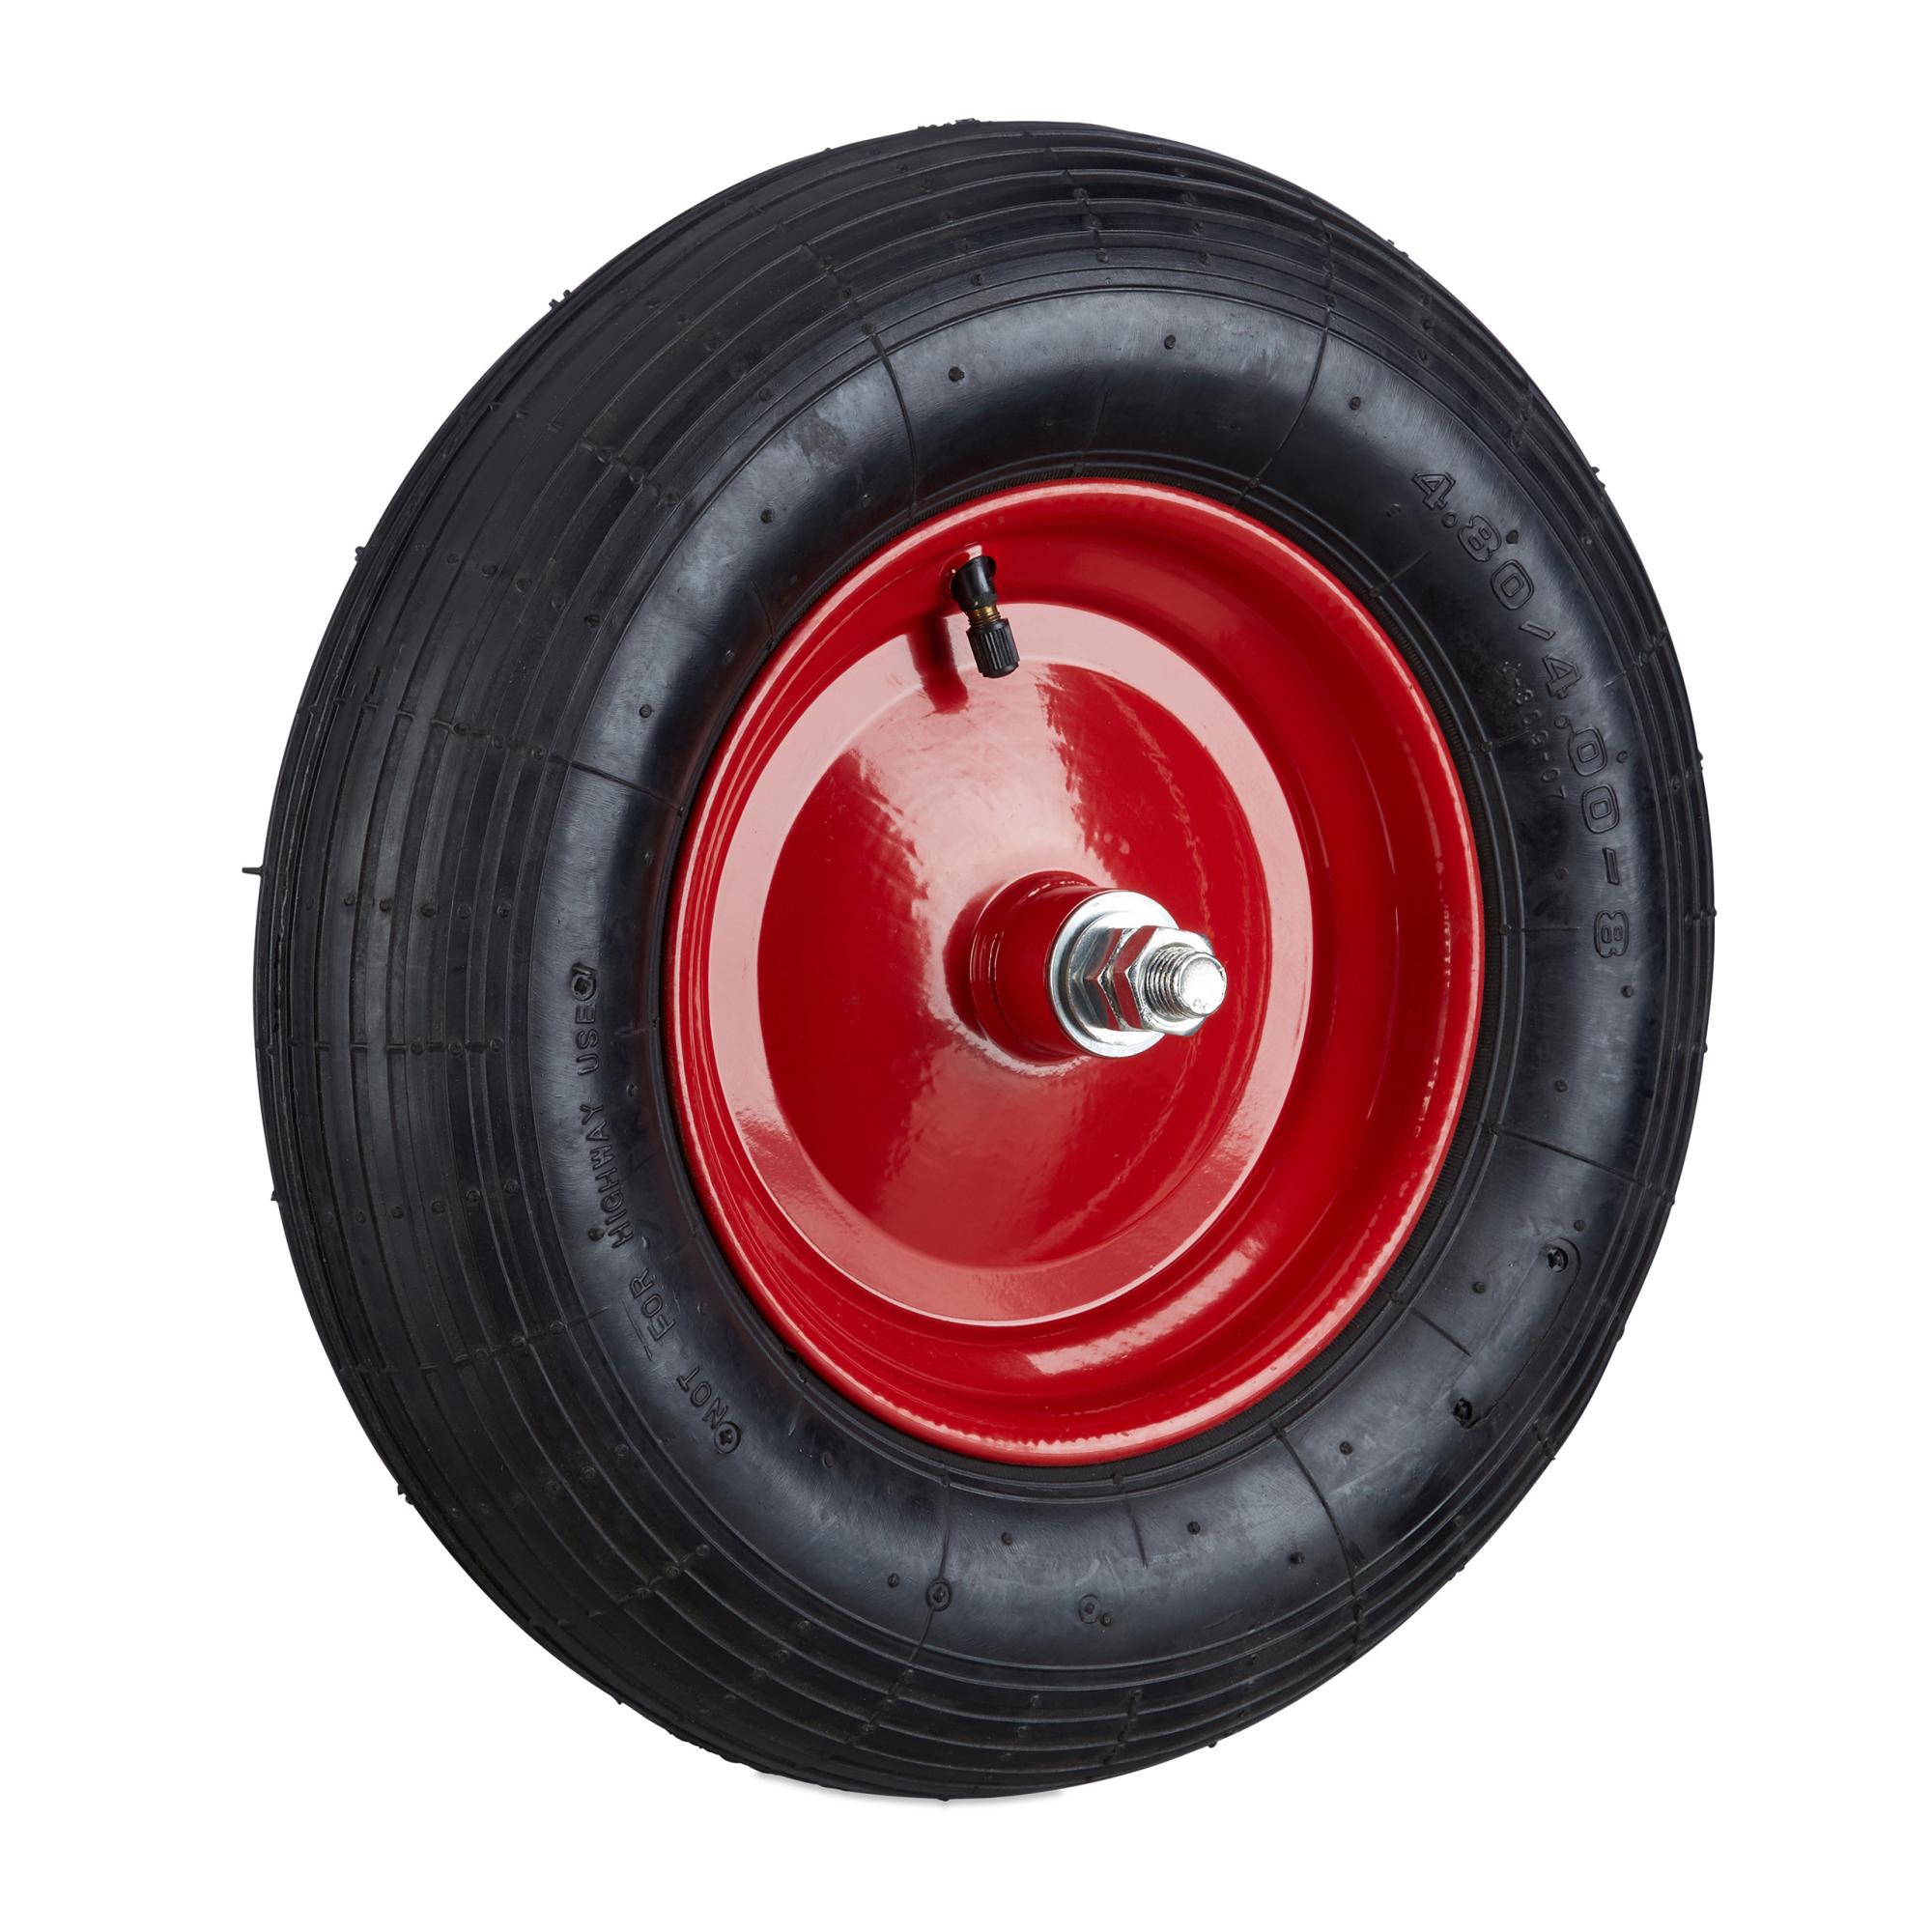 pneus de Rechange 3,00-4 pour Diable 260 x 85 mm profilé de roulettes 200 kg Relaxdays Lot de 2 pneus de brouette avec Tuyau Noir 